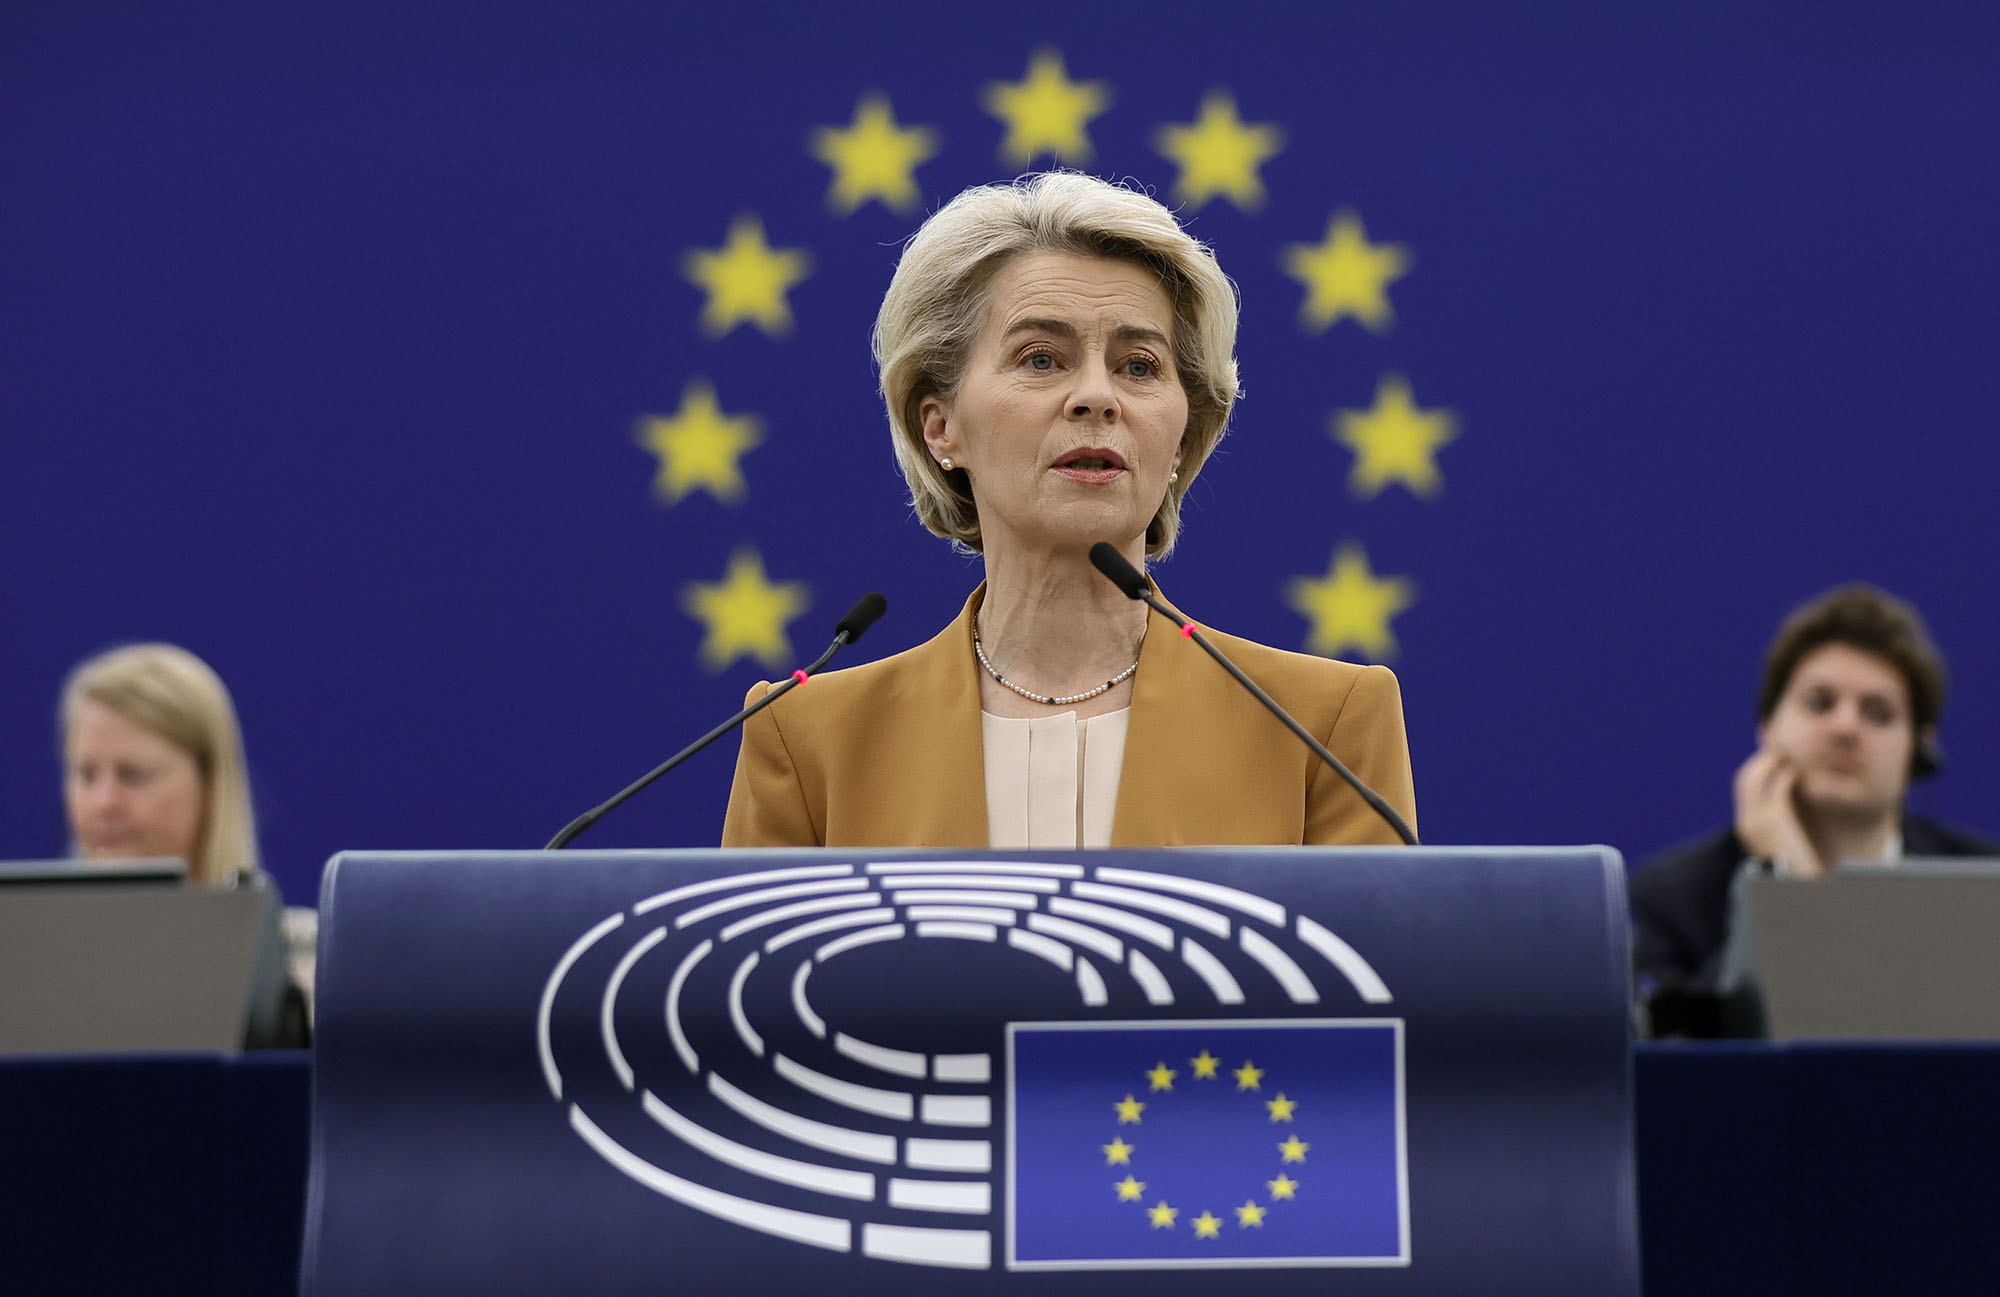 European Commission President Ursula von der Leyen speaks during a debate at the European Parliament in Strasbourg, France, on December 13.